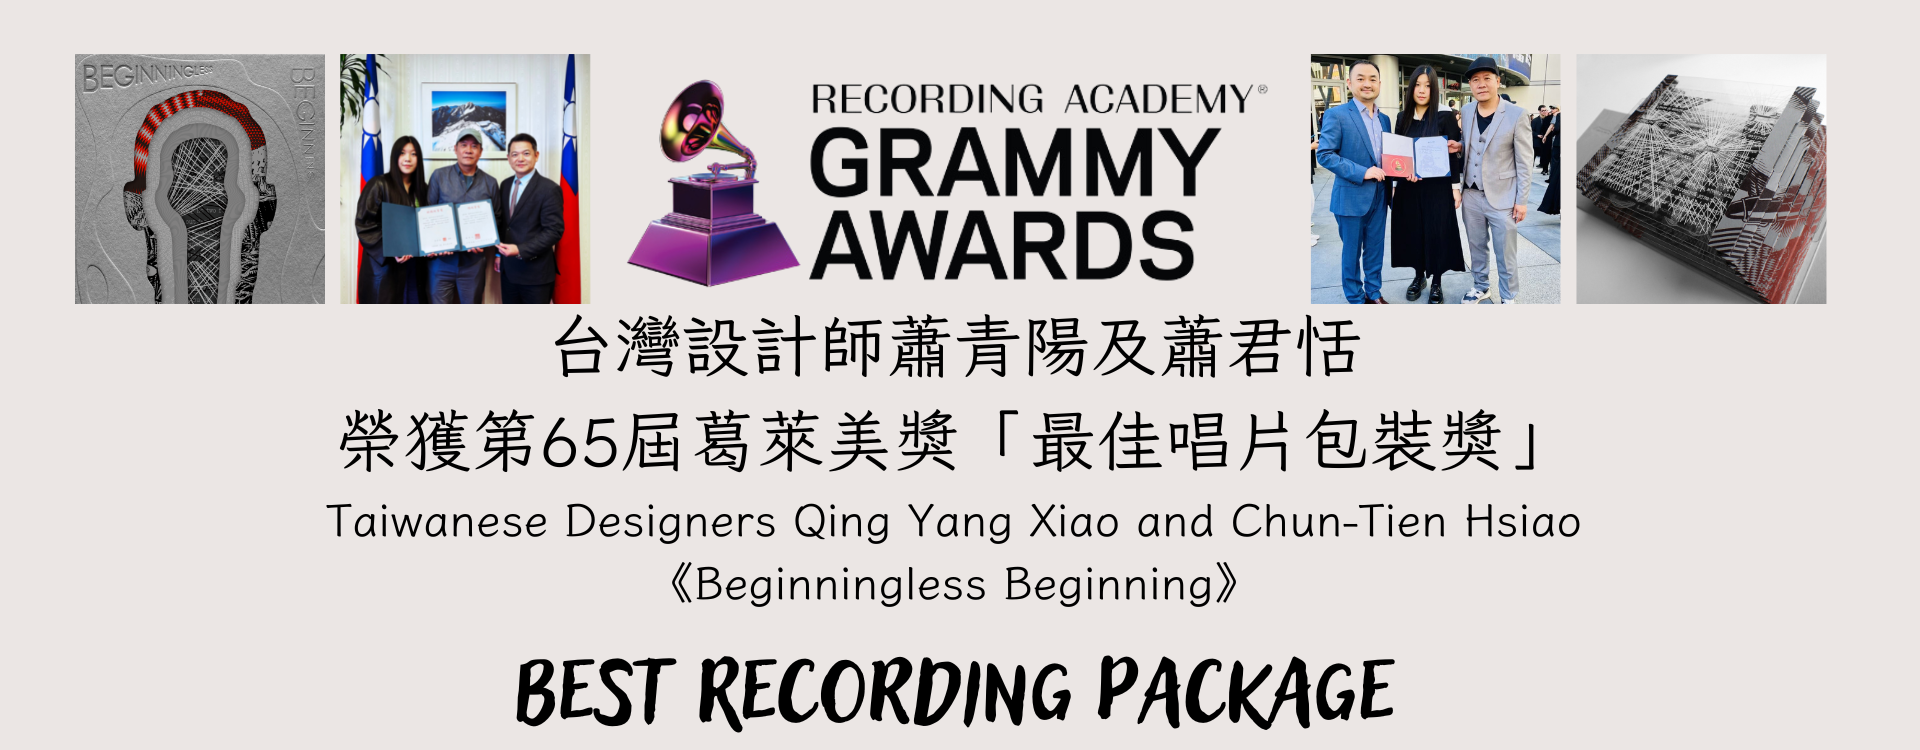 臺灣設計師蕭青陽、蕭君恬設計之《Beginningless Beginning》專輯榮獲第65屆葛萊美獎最佳唱片包裝獎